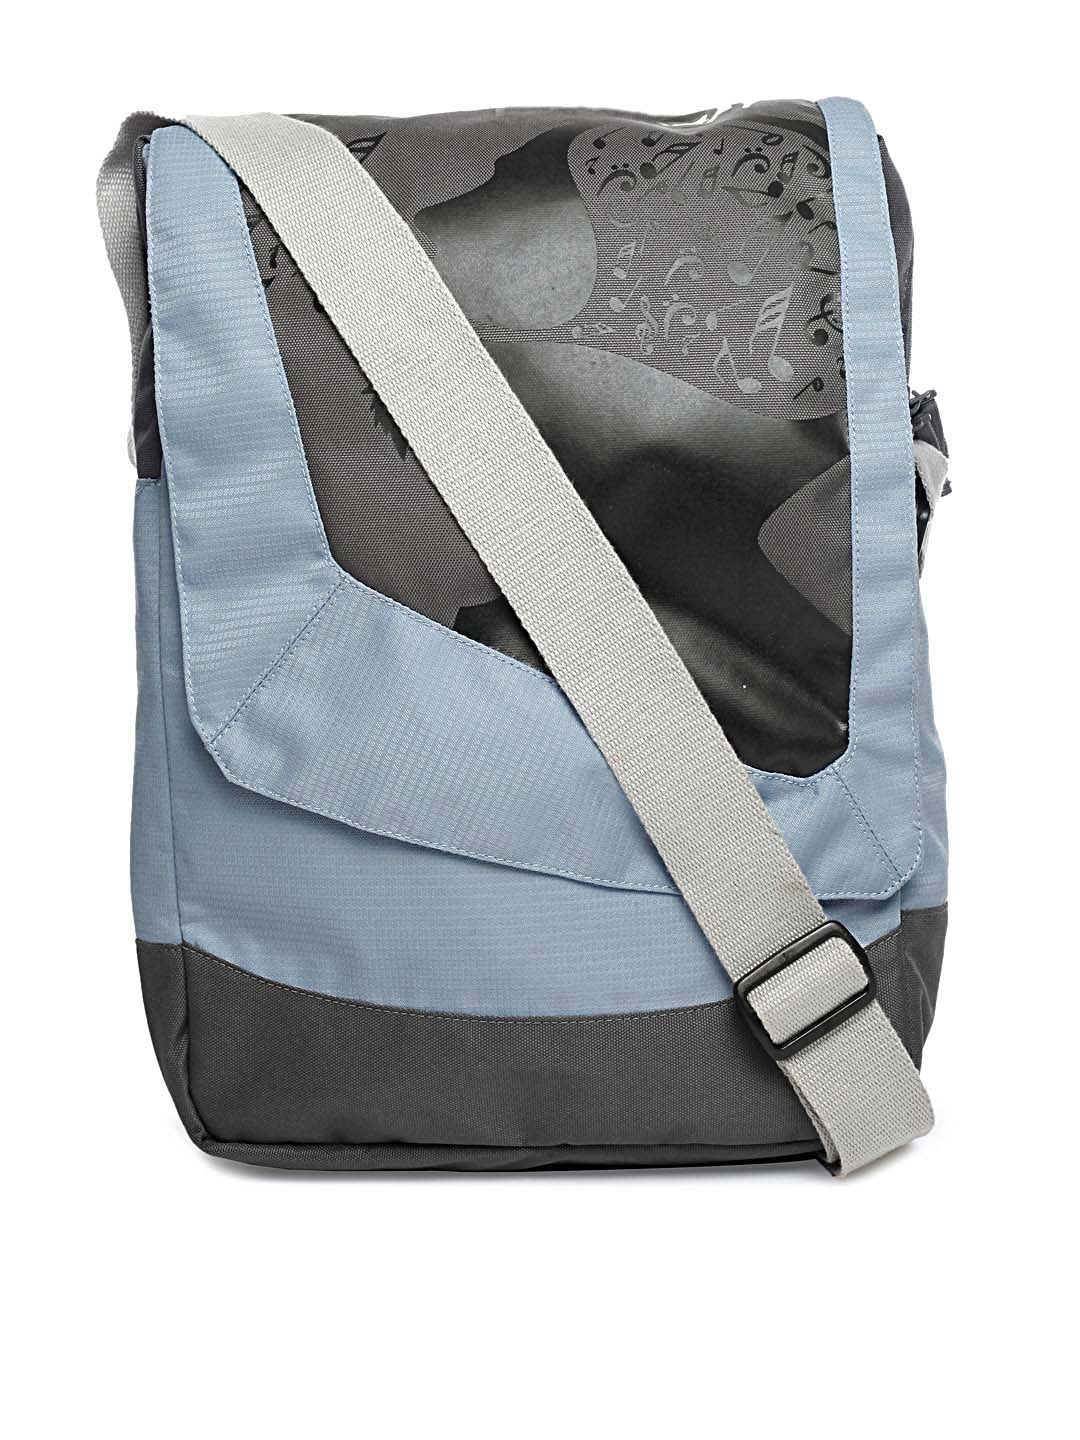 Wildcraft Unisex Blue & Grey Printed Sling Bag